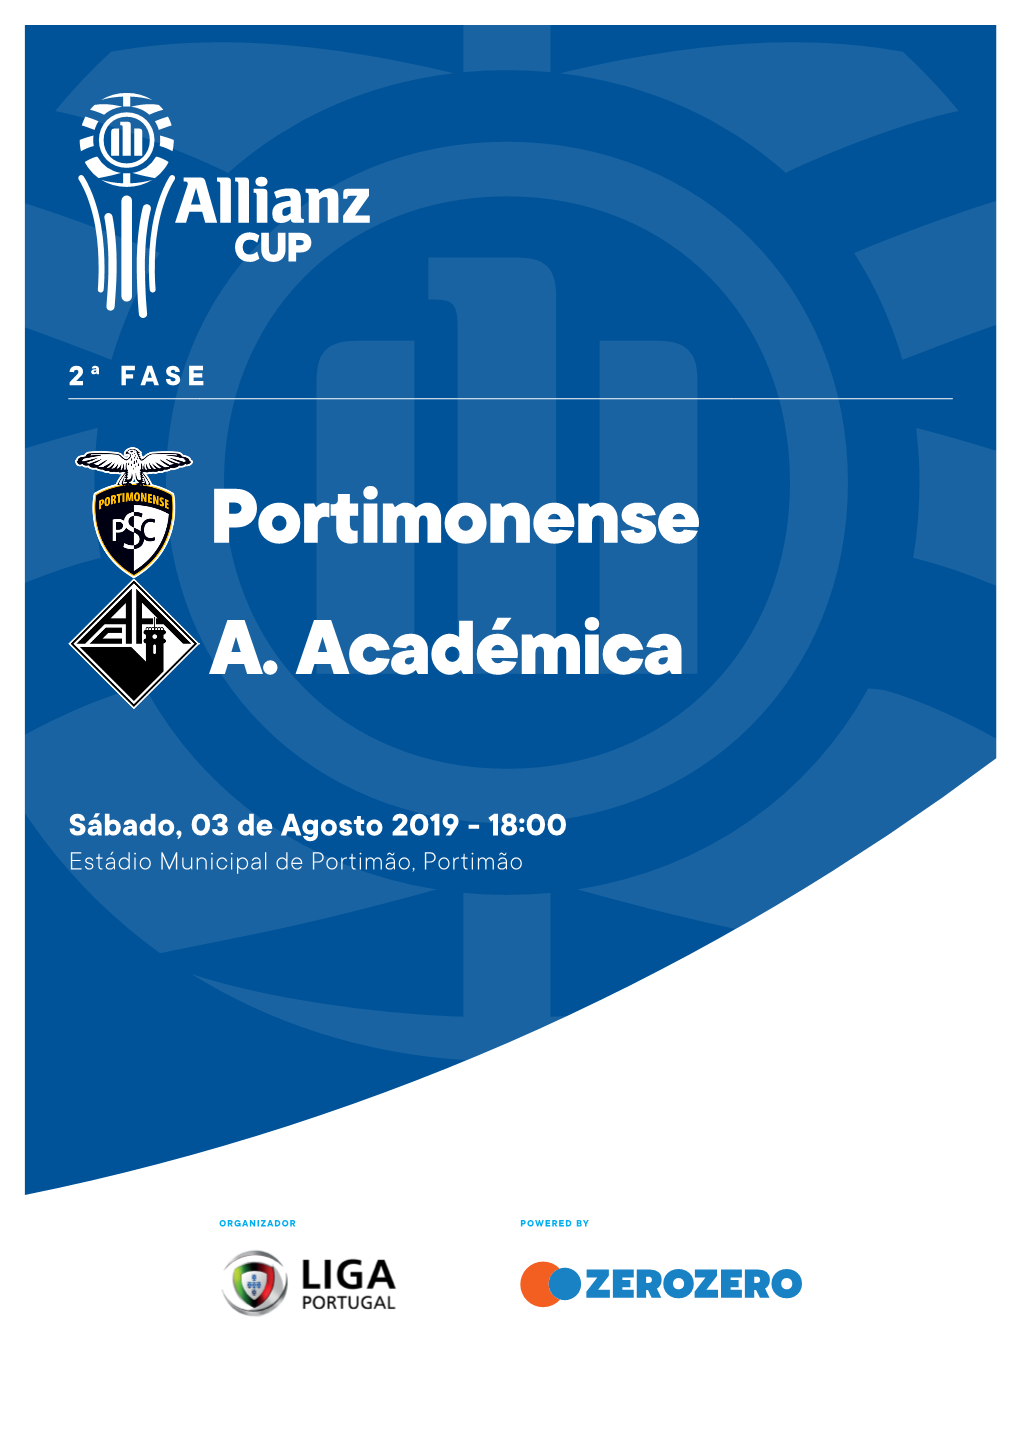 Portimonense A. Académica